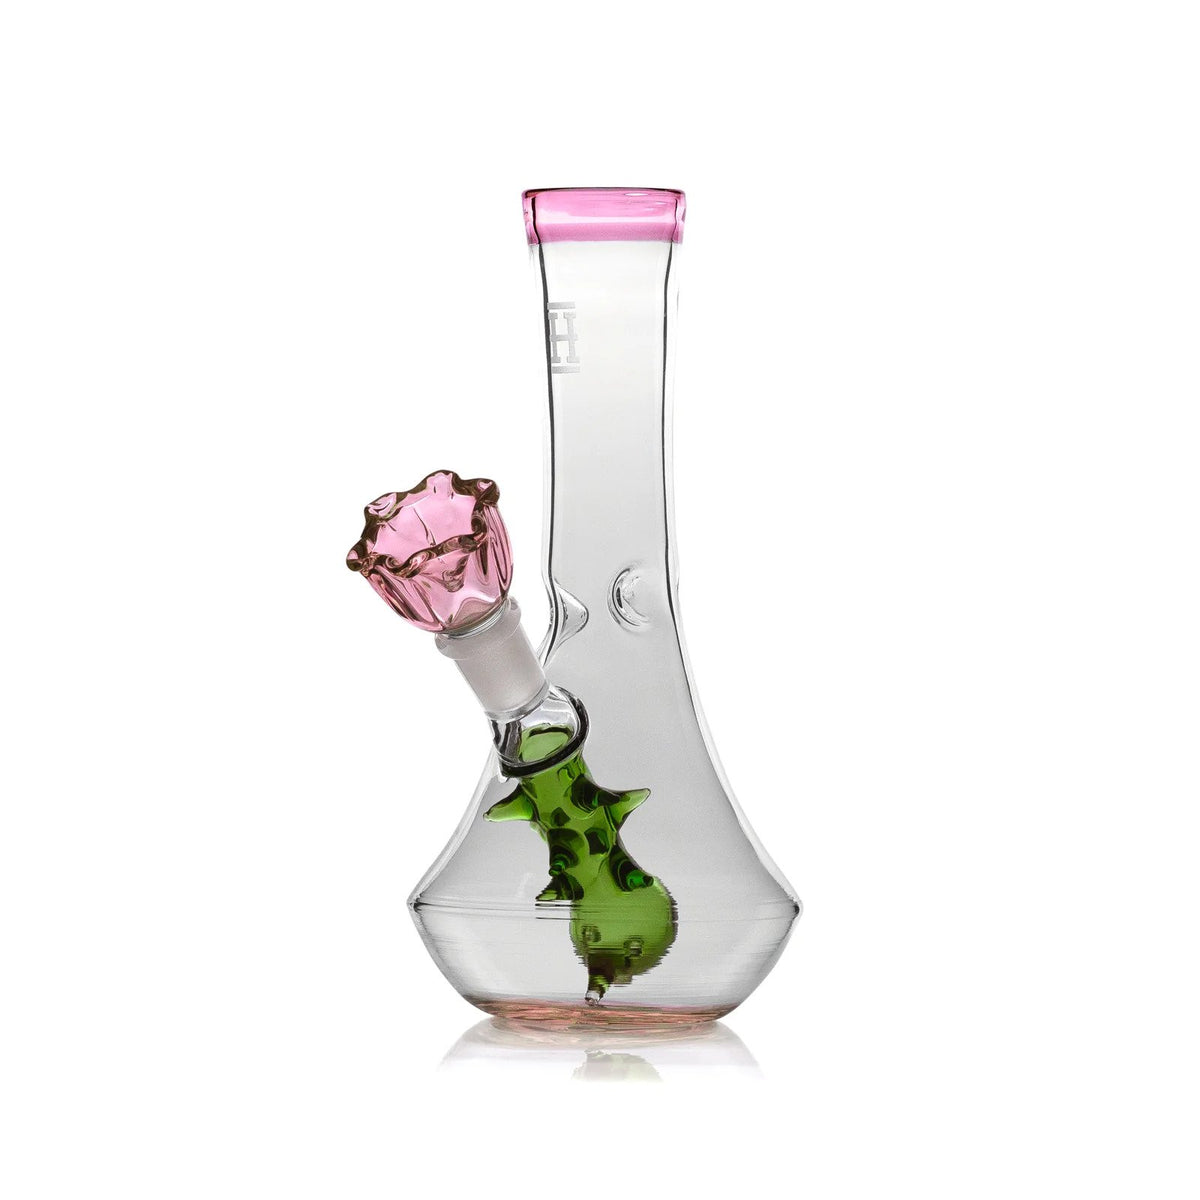 7” Flower Vase Bong - Rose Bowl includes